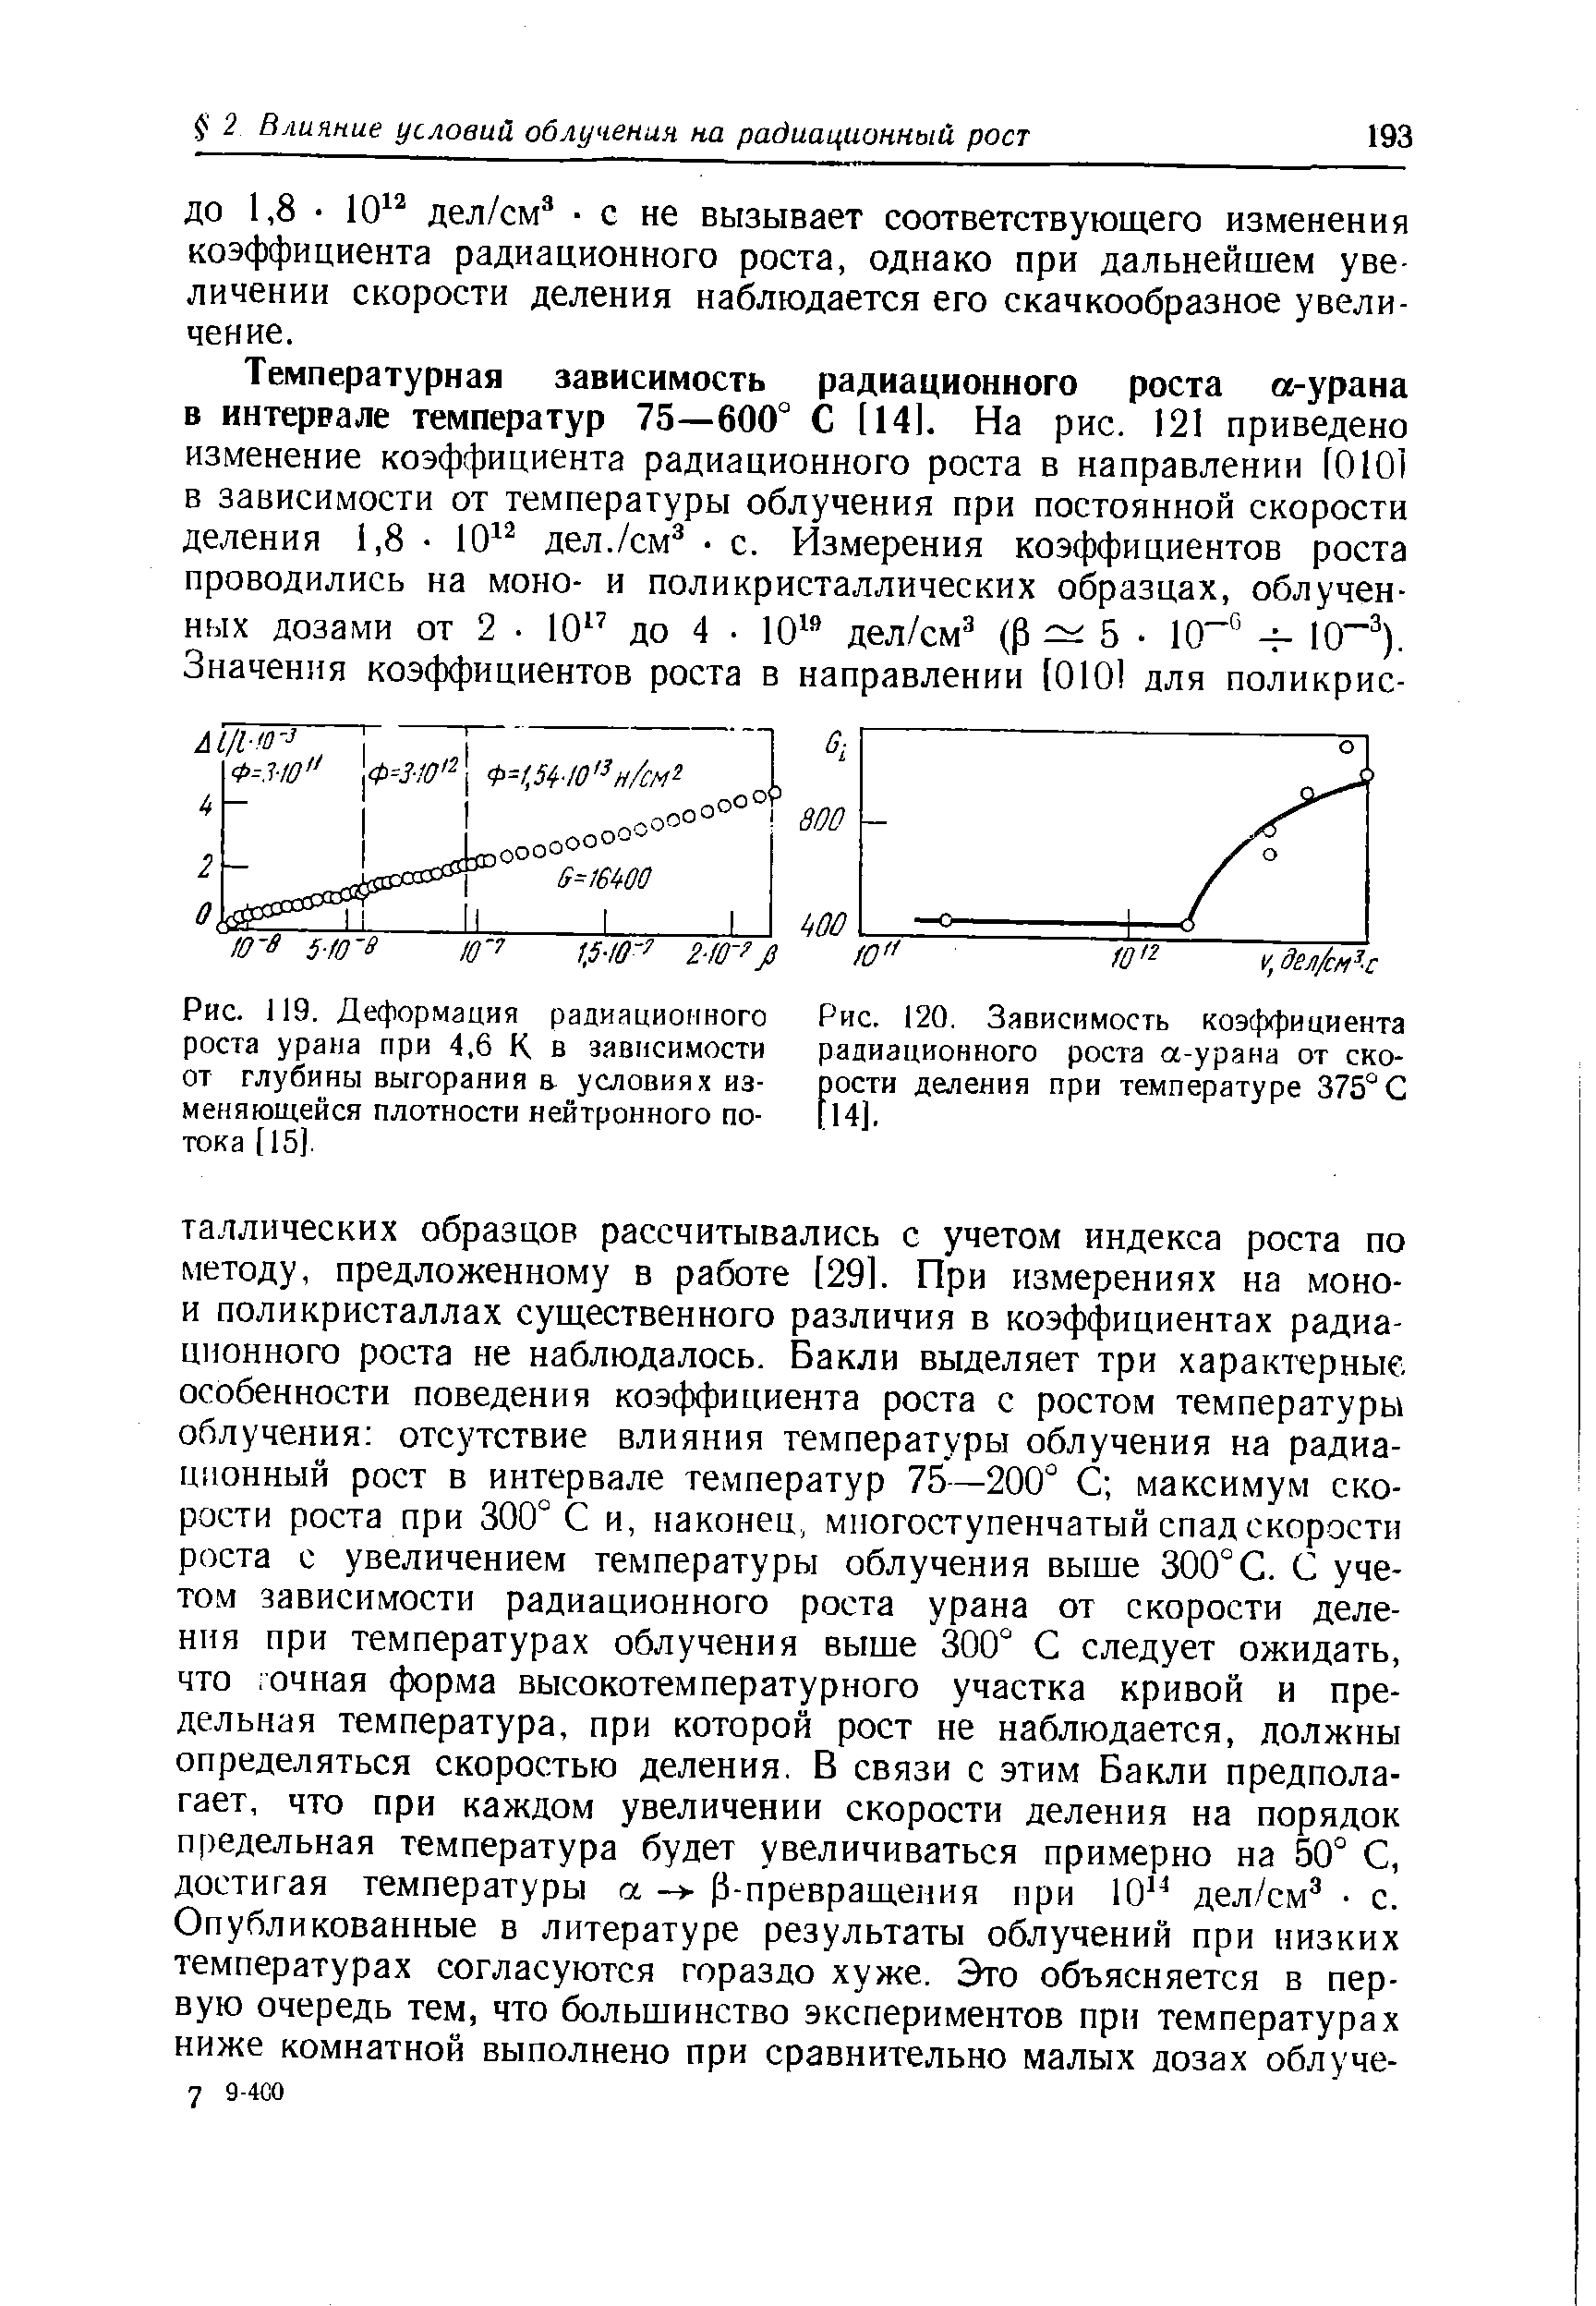 Рис. 119. Деформация радиационного роста урана при 4,6 К в зависимости от глубины выгорания а условиях изменяющейся плотности нейтронного потока [15].
